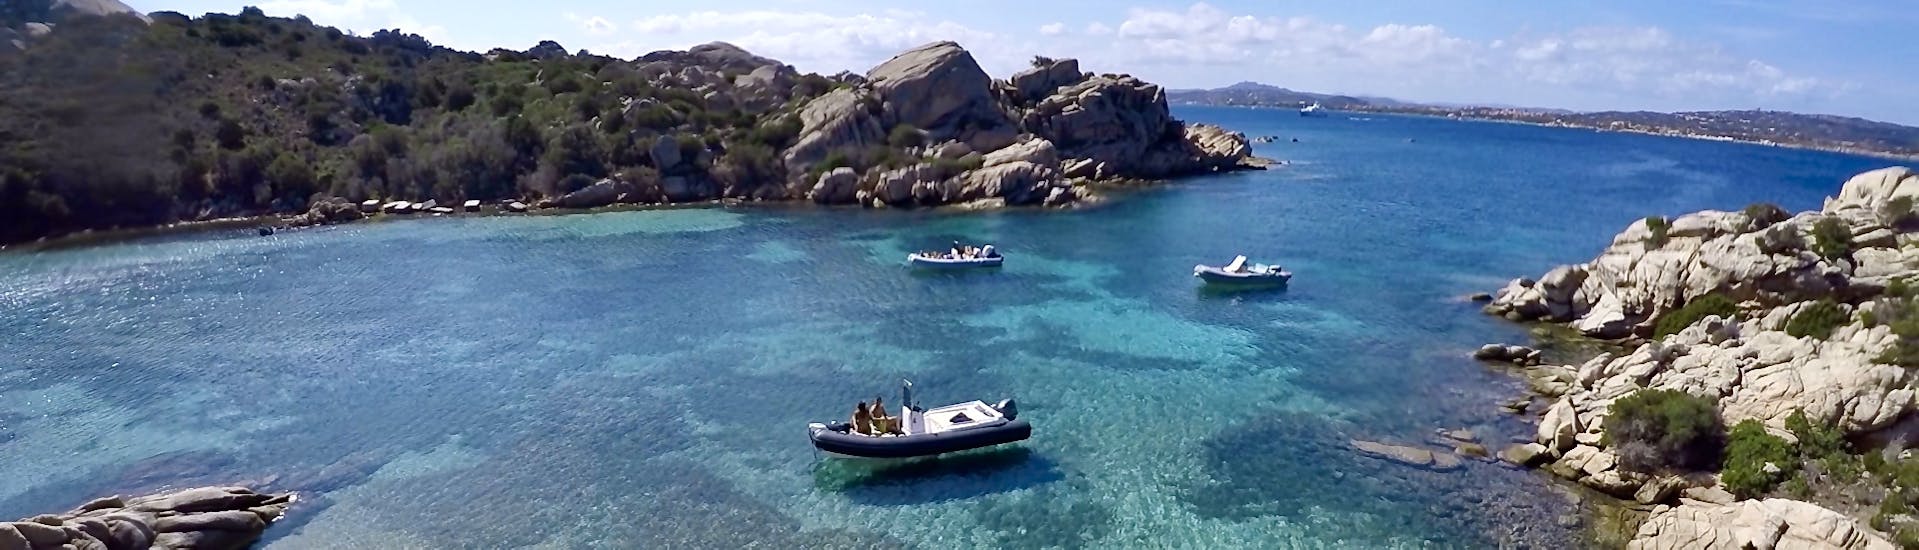 Uno dei nostri gommoni che naviga nelle acque color smeraldo dell'Arcipelago di La Maddalena.